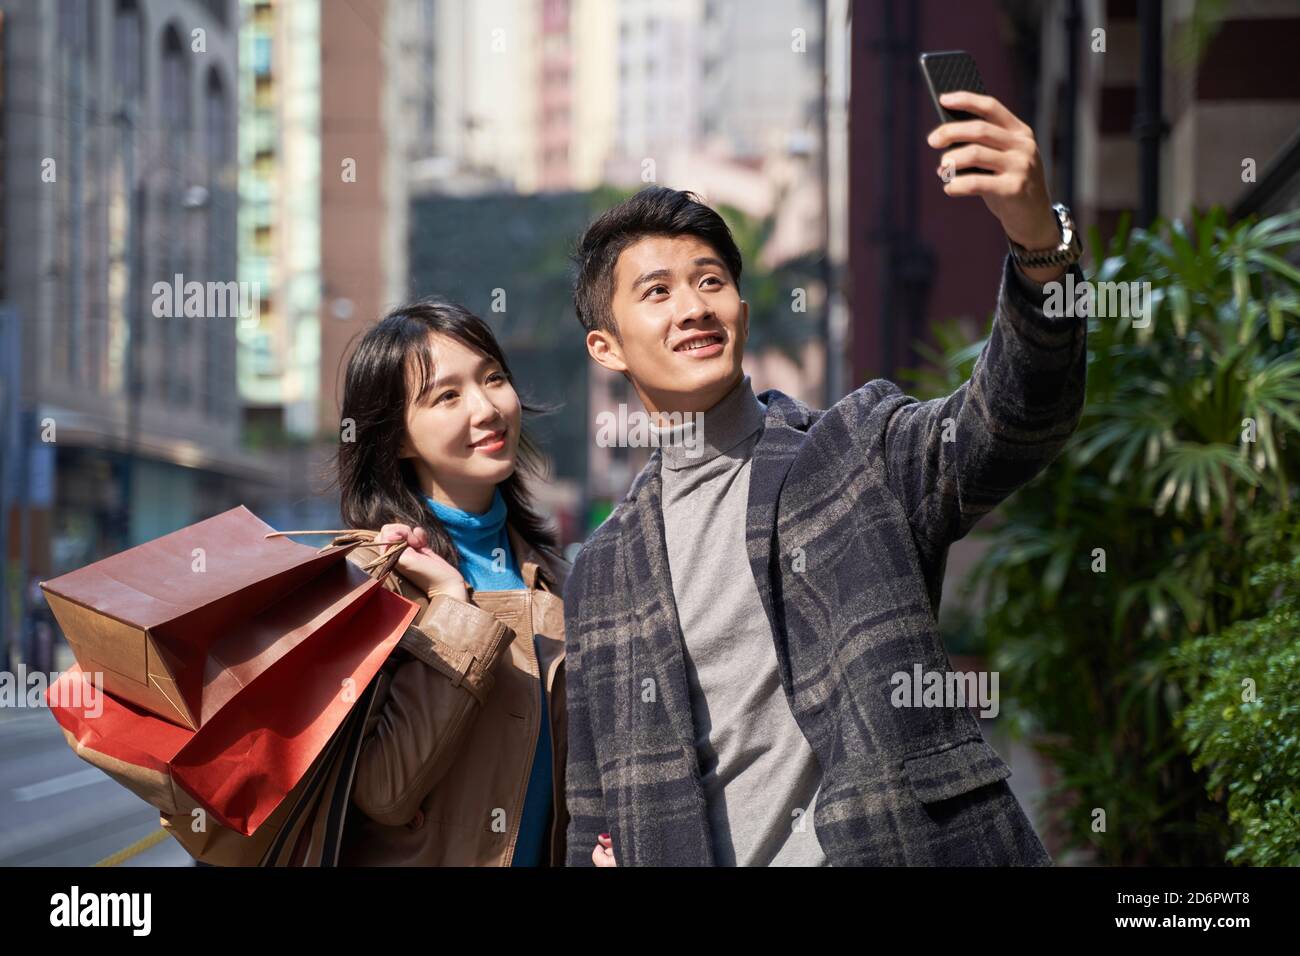 un jeune couple asiatique heureux et aimant prend un selfie pendant marche et shopping dans une ville moderne Banque D'Images